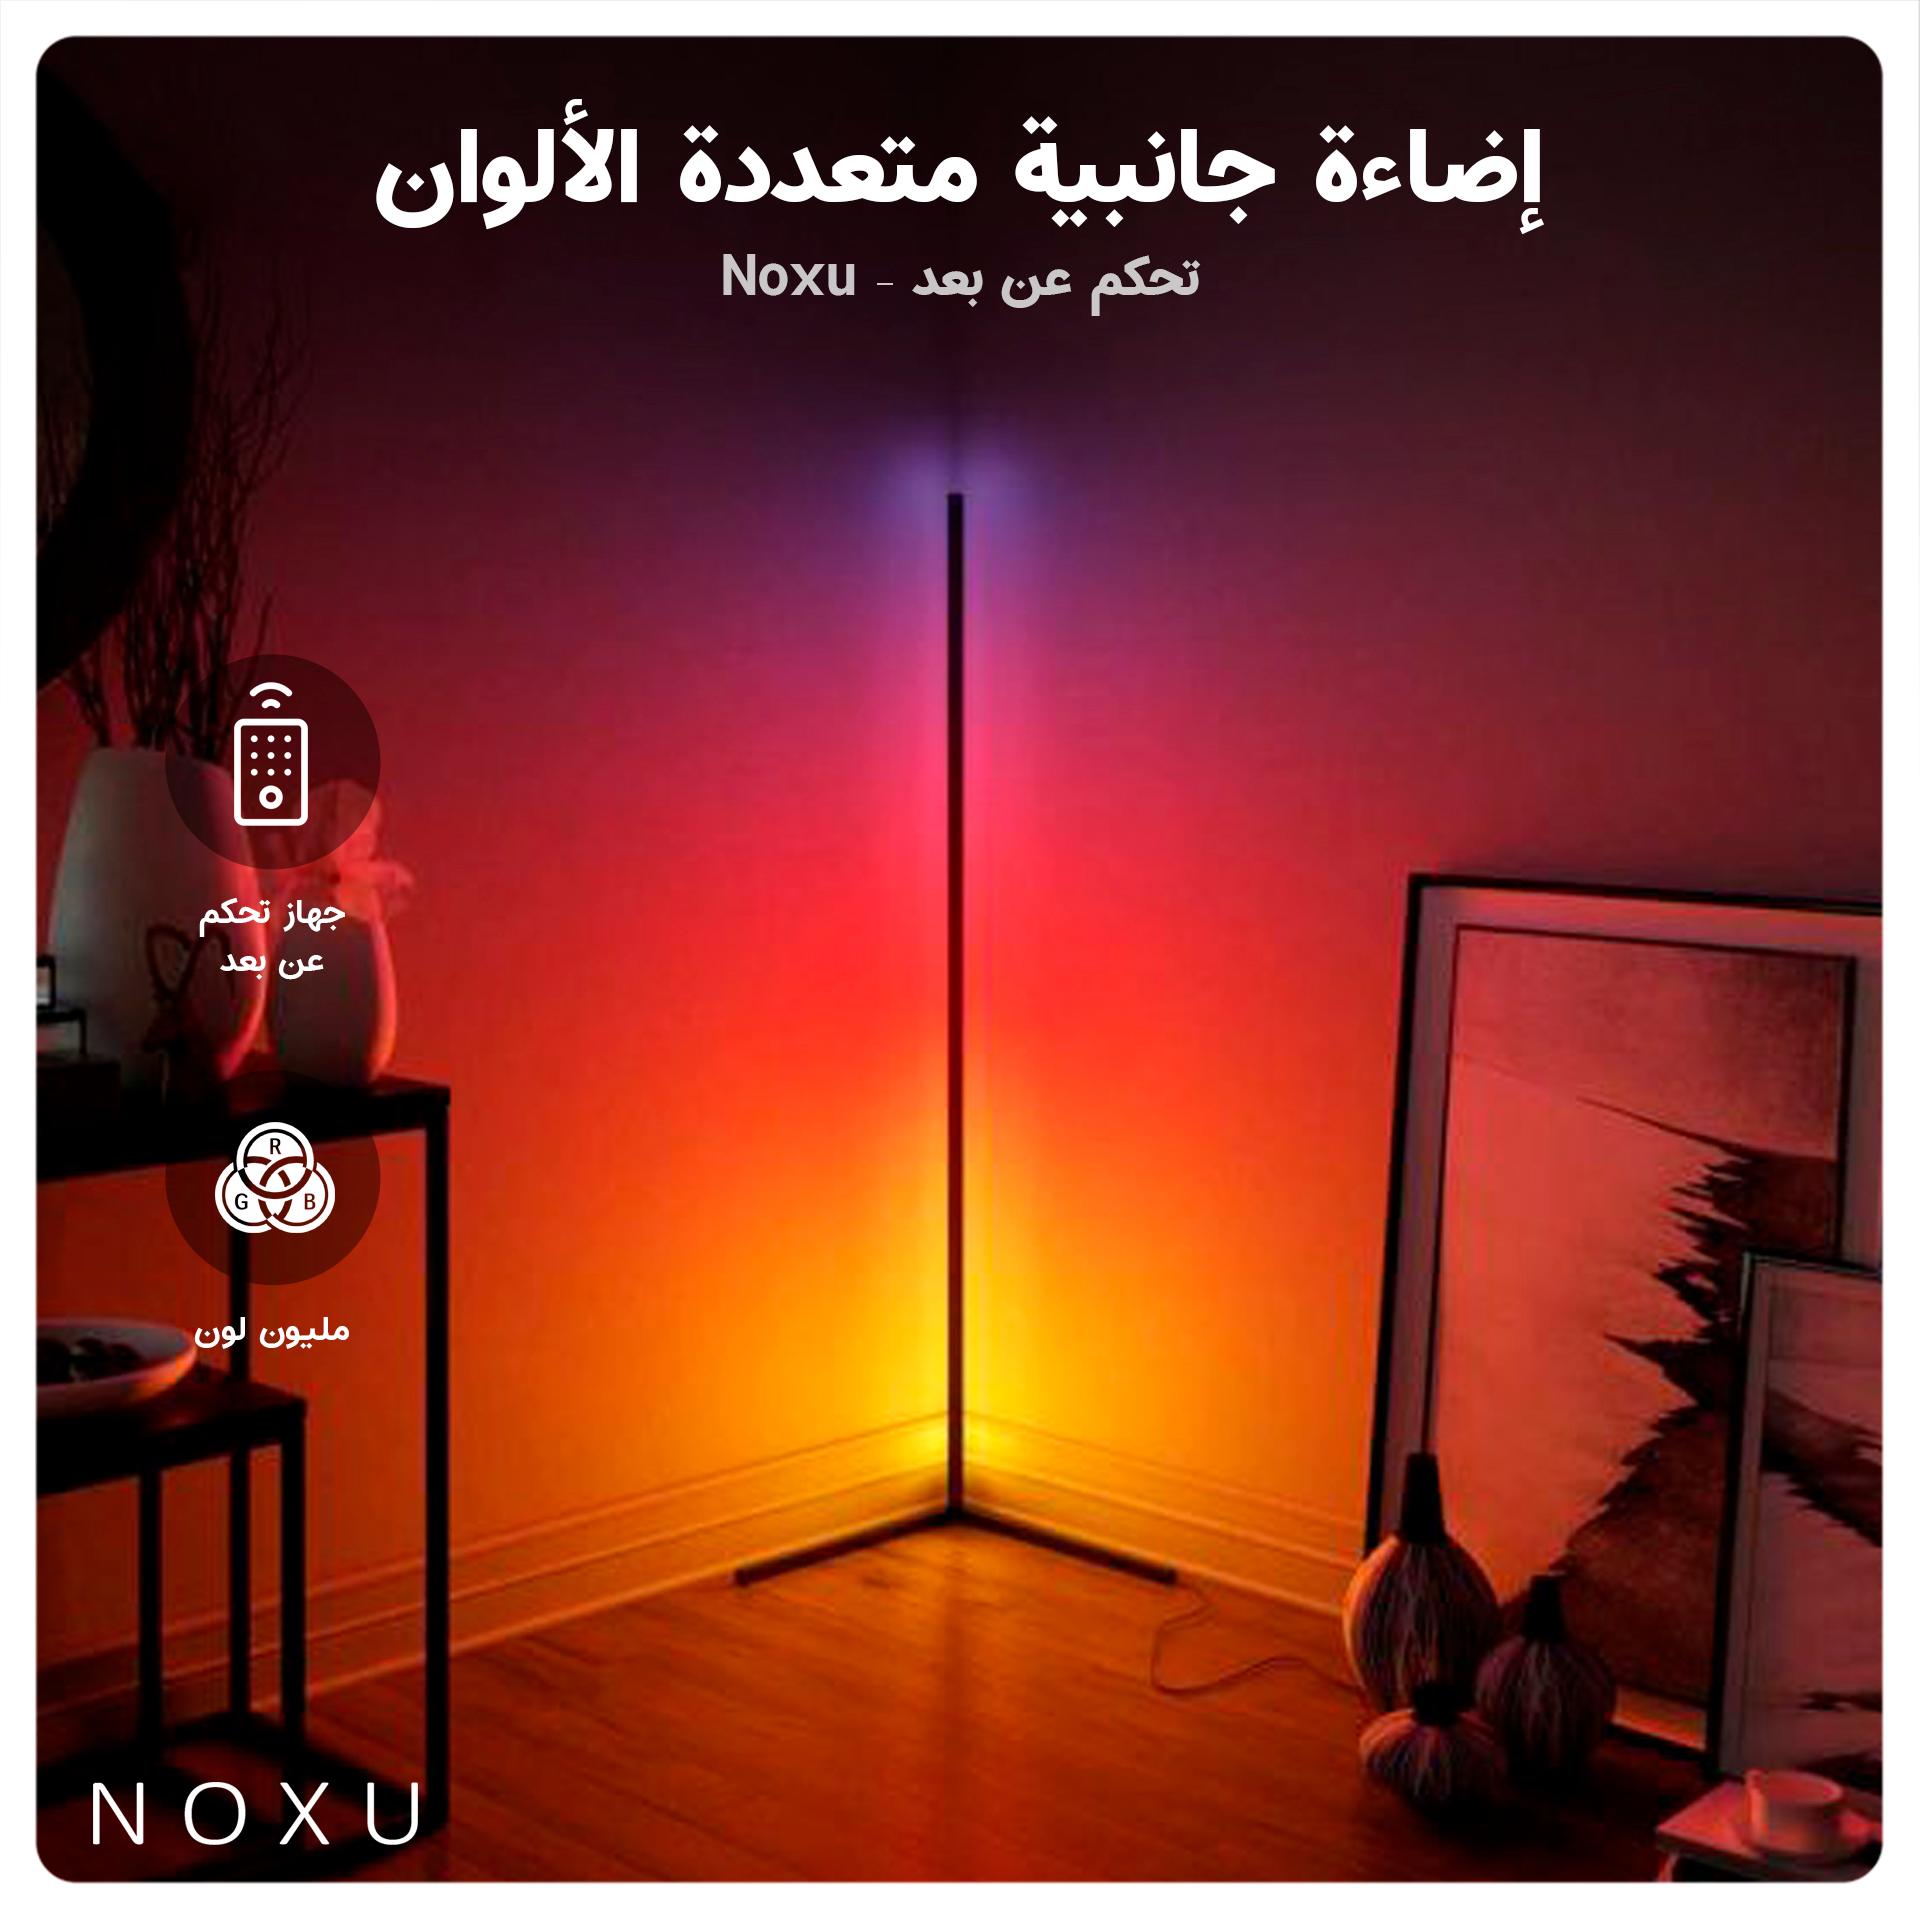 إضاءة جانبية متعددة الألوان بتحكم عن بعد - Noxu